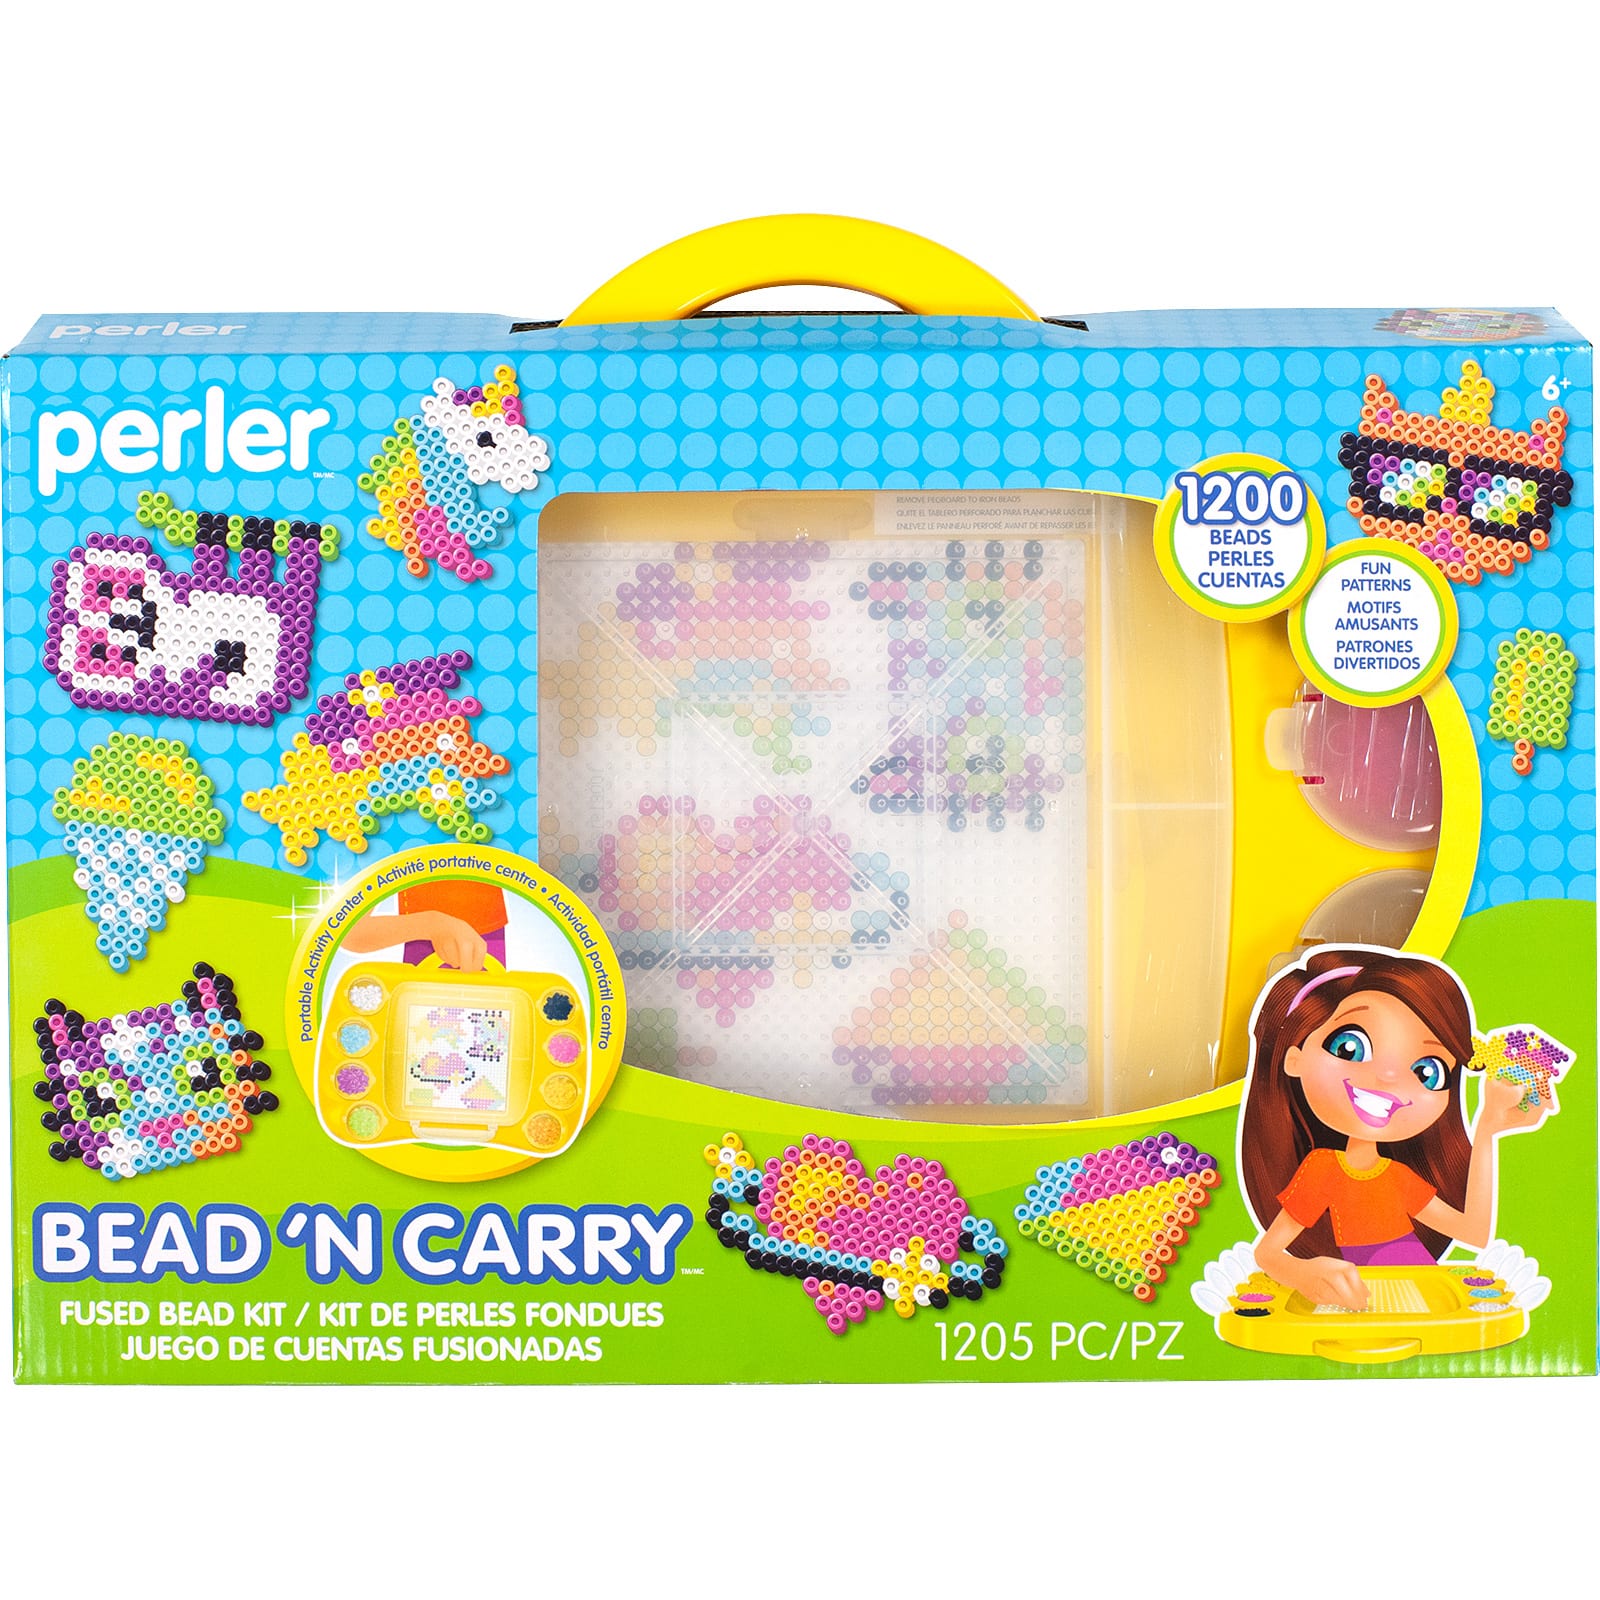 Perler&#xAE; Bead &#x27;N Carry Fused Bead Kit